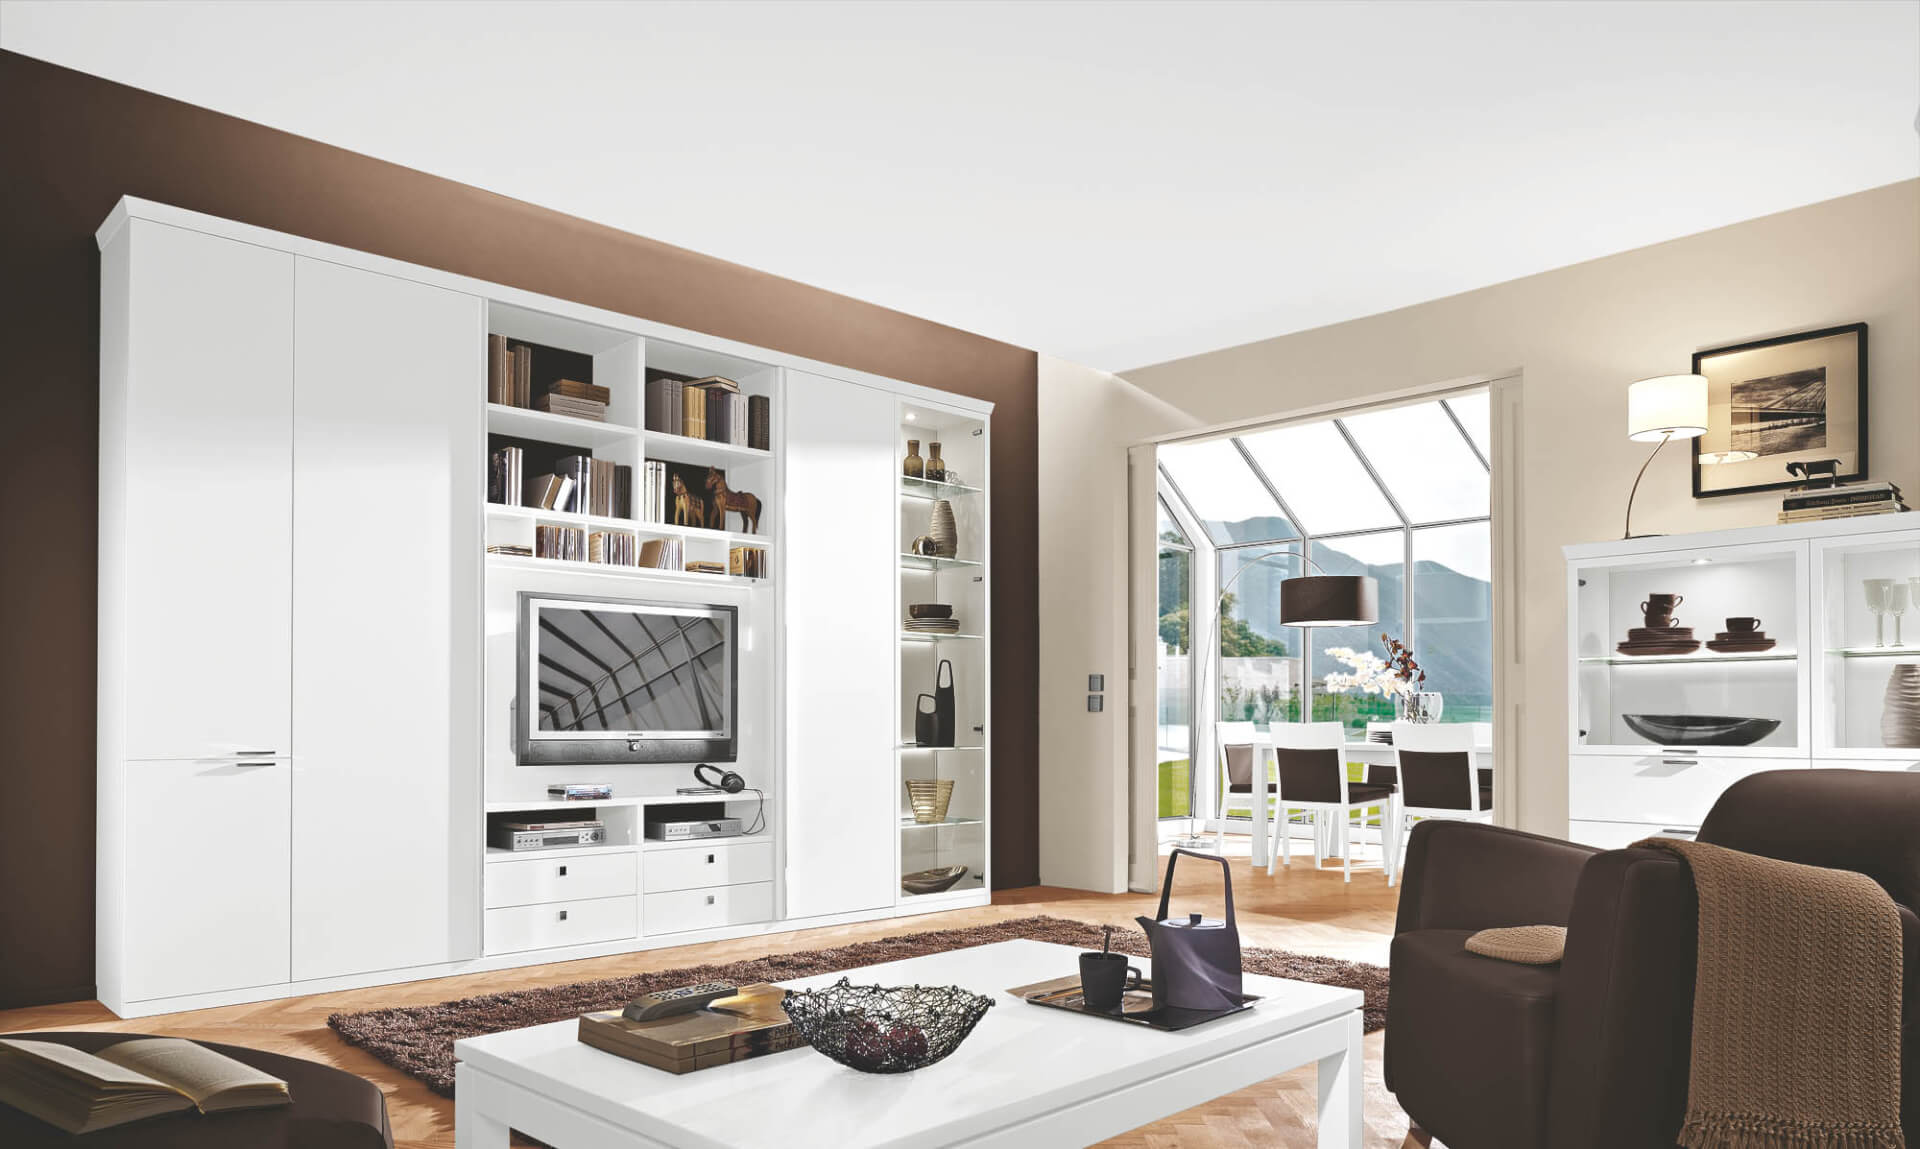 Modell Siena Wohnzimmerprogramm von RMW Rietberger Möbelwerke